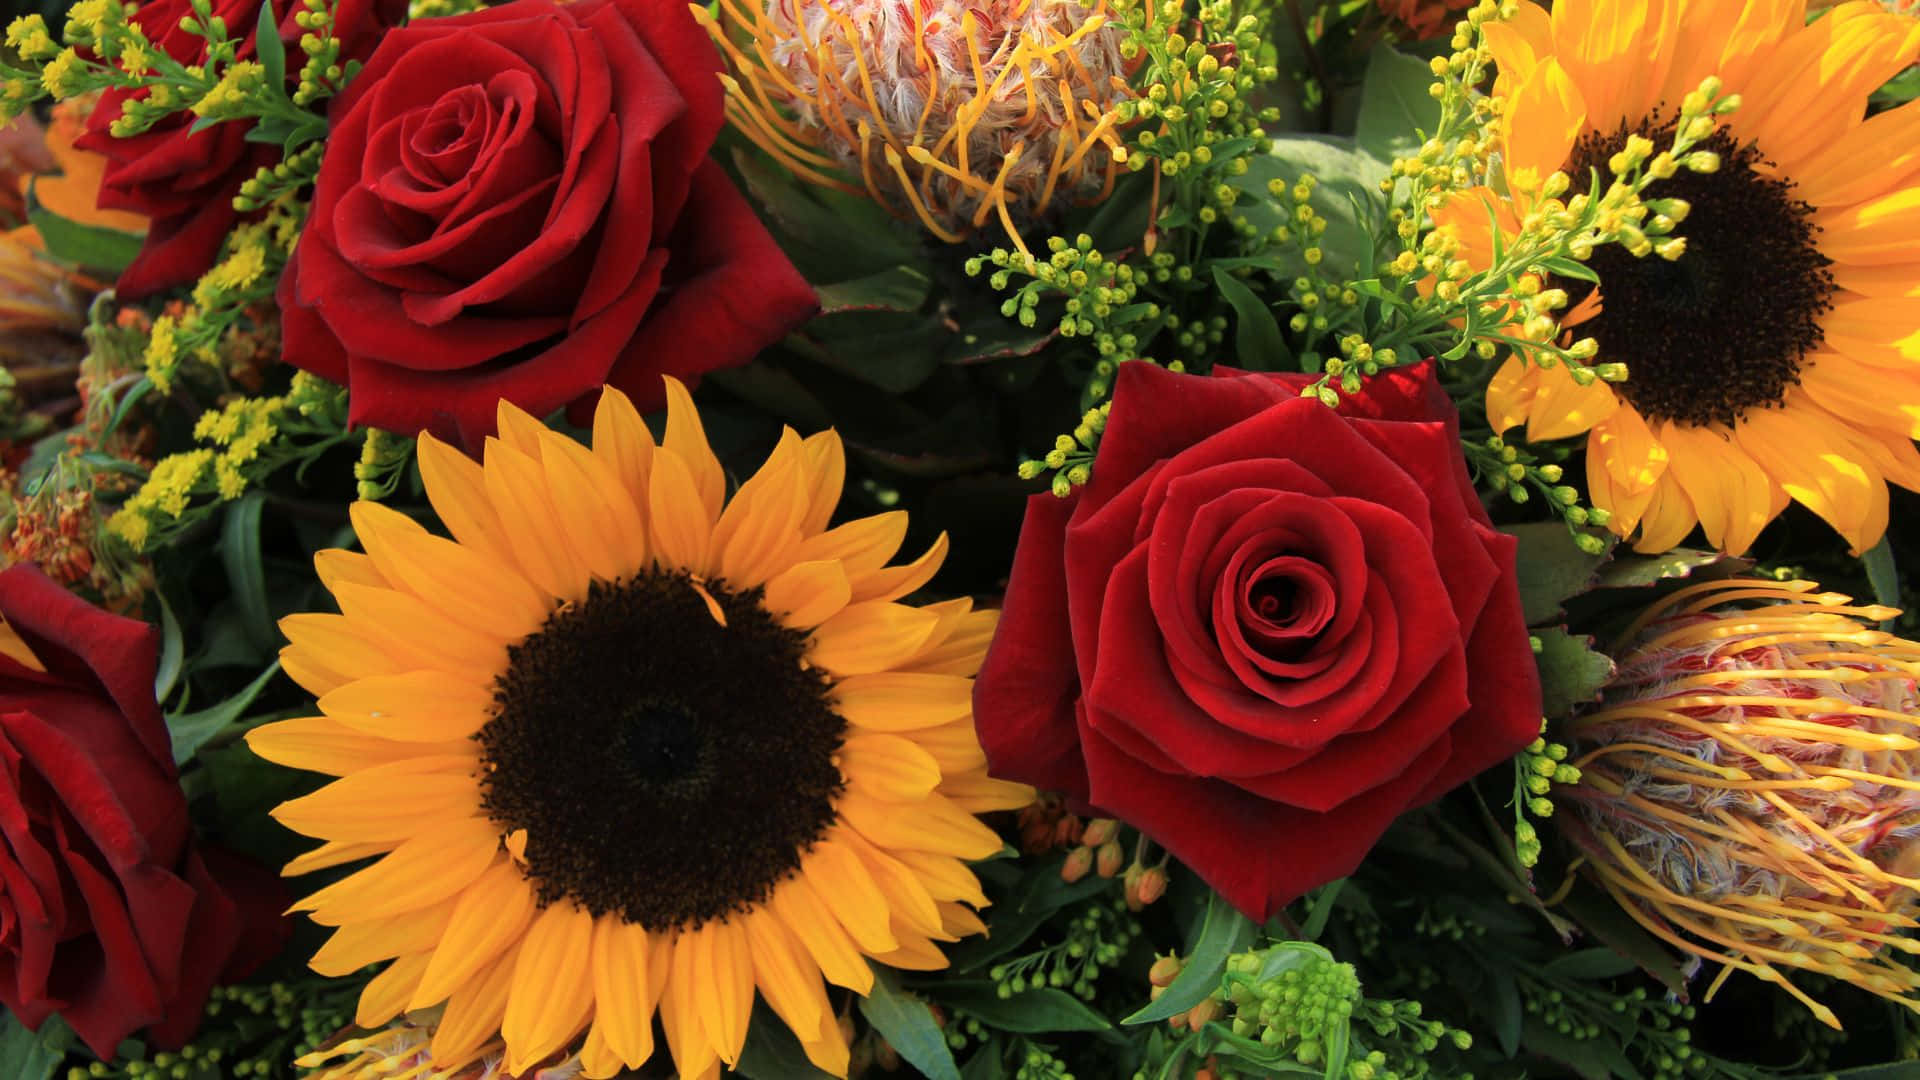 Einstrauß Lebendiger Sonnenblumen Und Rosen Fügt Sich Zusammen, Um Schönheit Und Freude In Jeden Raum Zu Bringen. Wallpaper